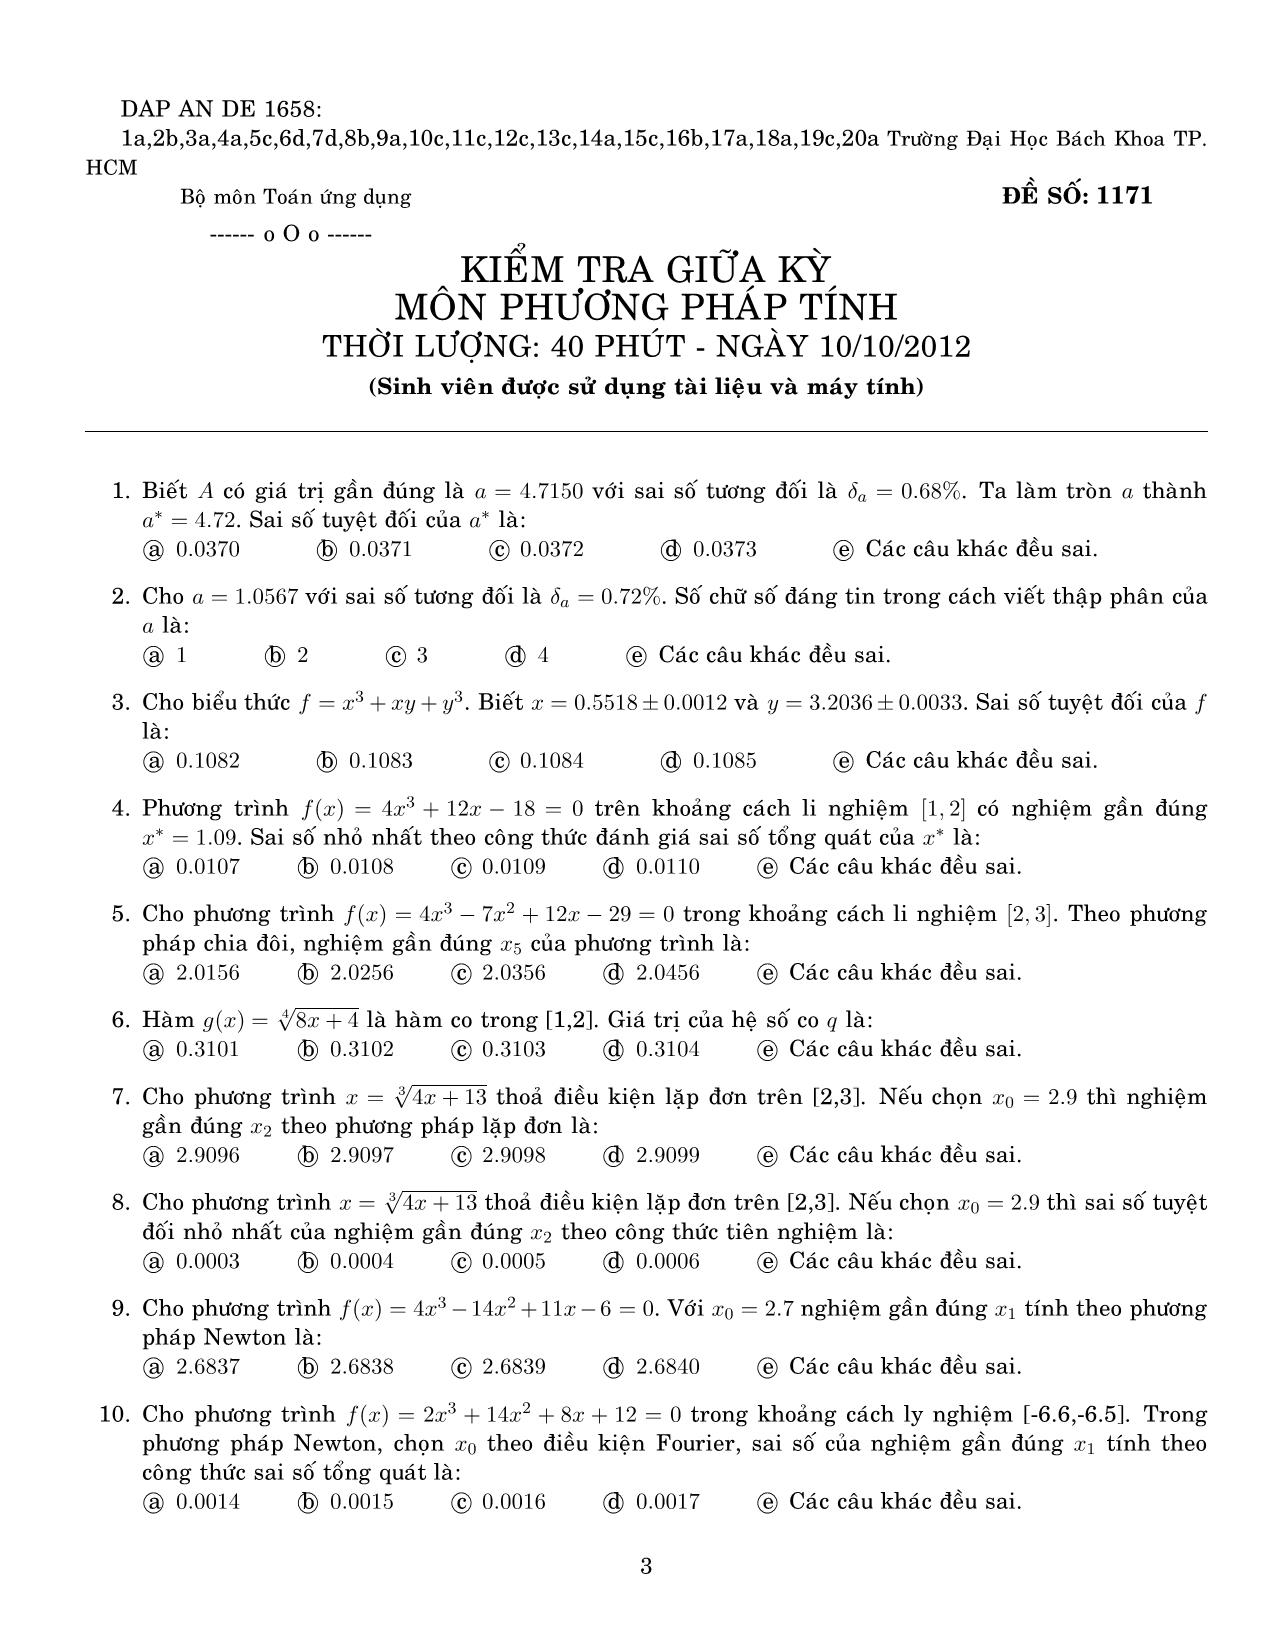 4 Đề kiểm tra giữa học kỳ môn Phương pháp tính - Năm học 2012-2013 - Đại học Bách khoa thành phố Hồ Chí Minh trang 3